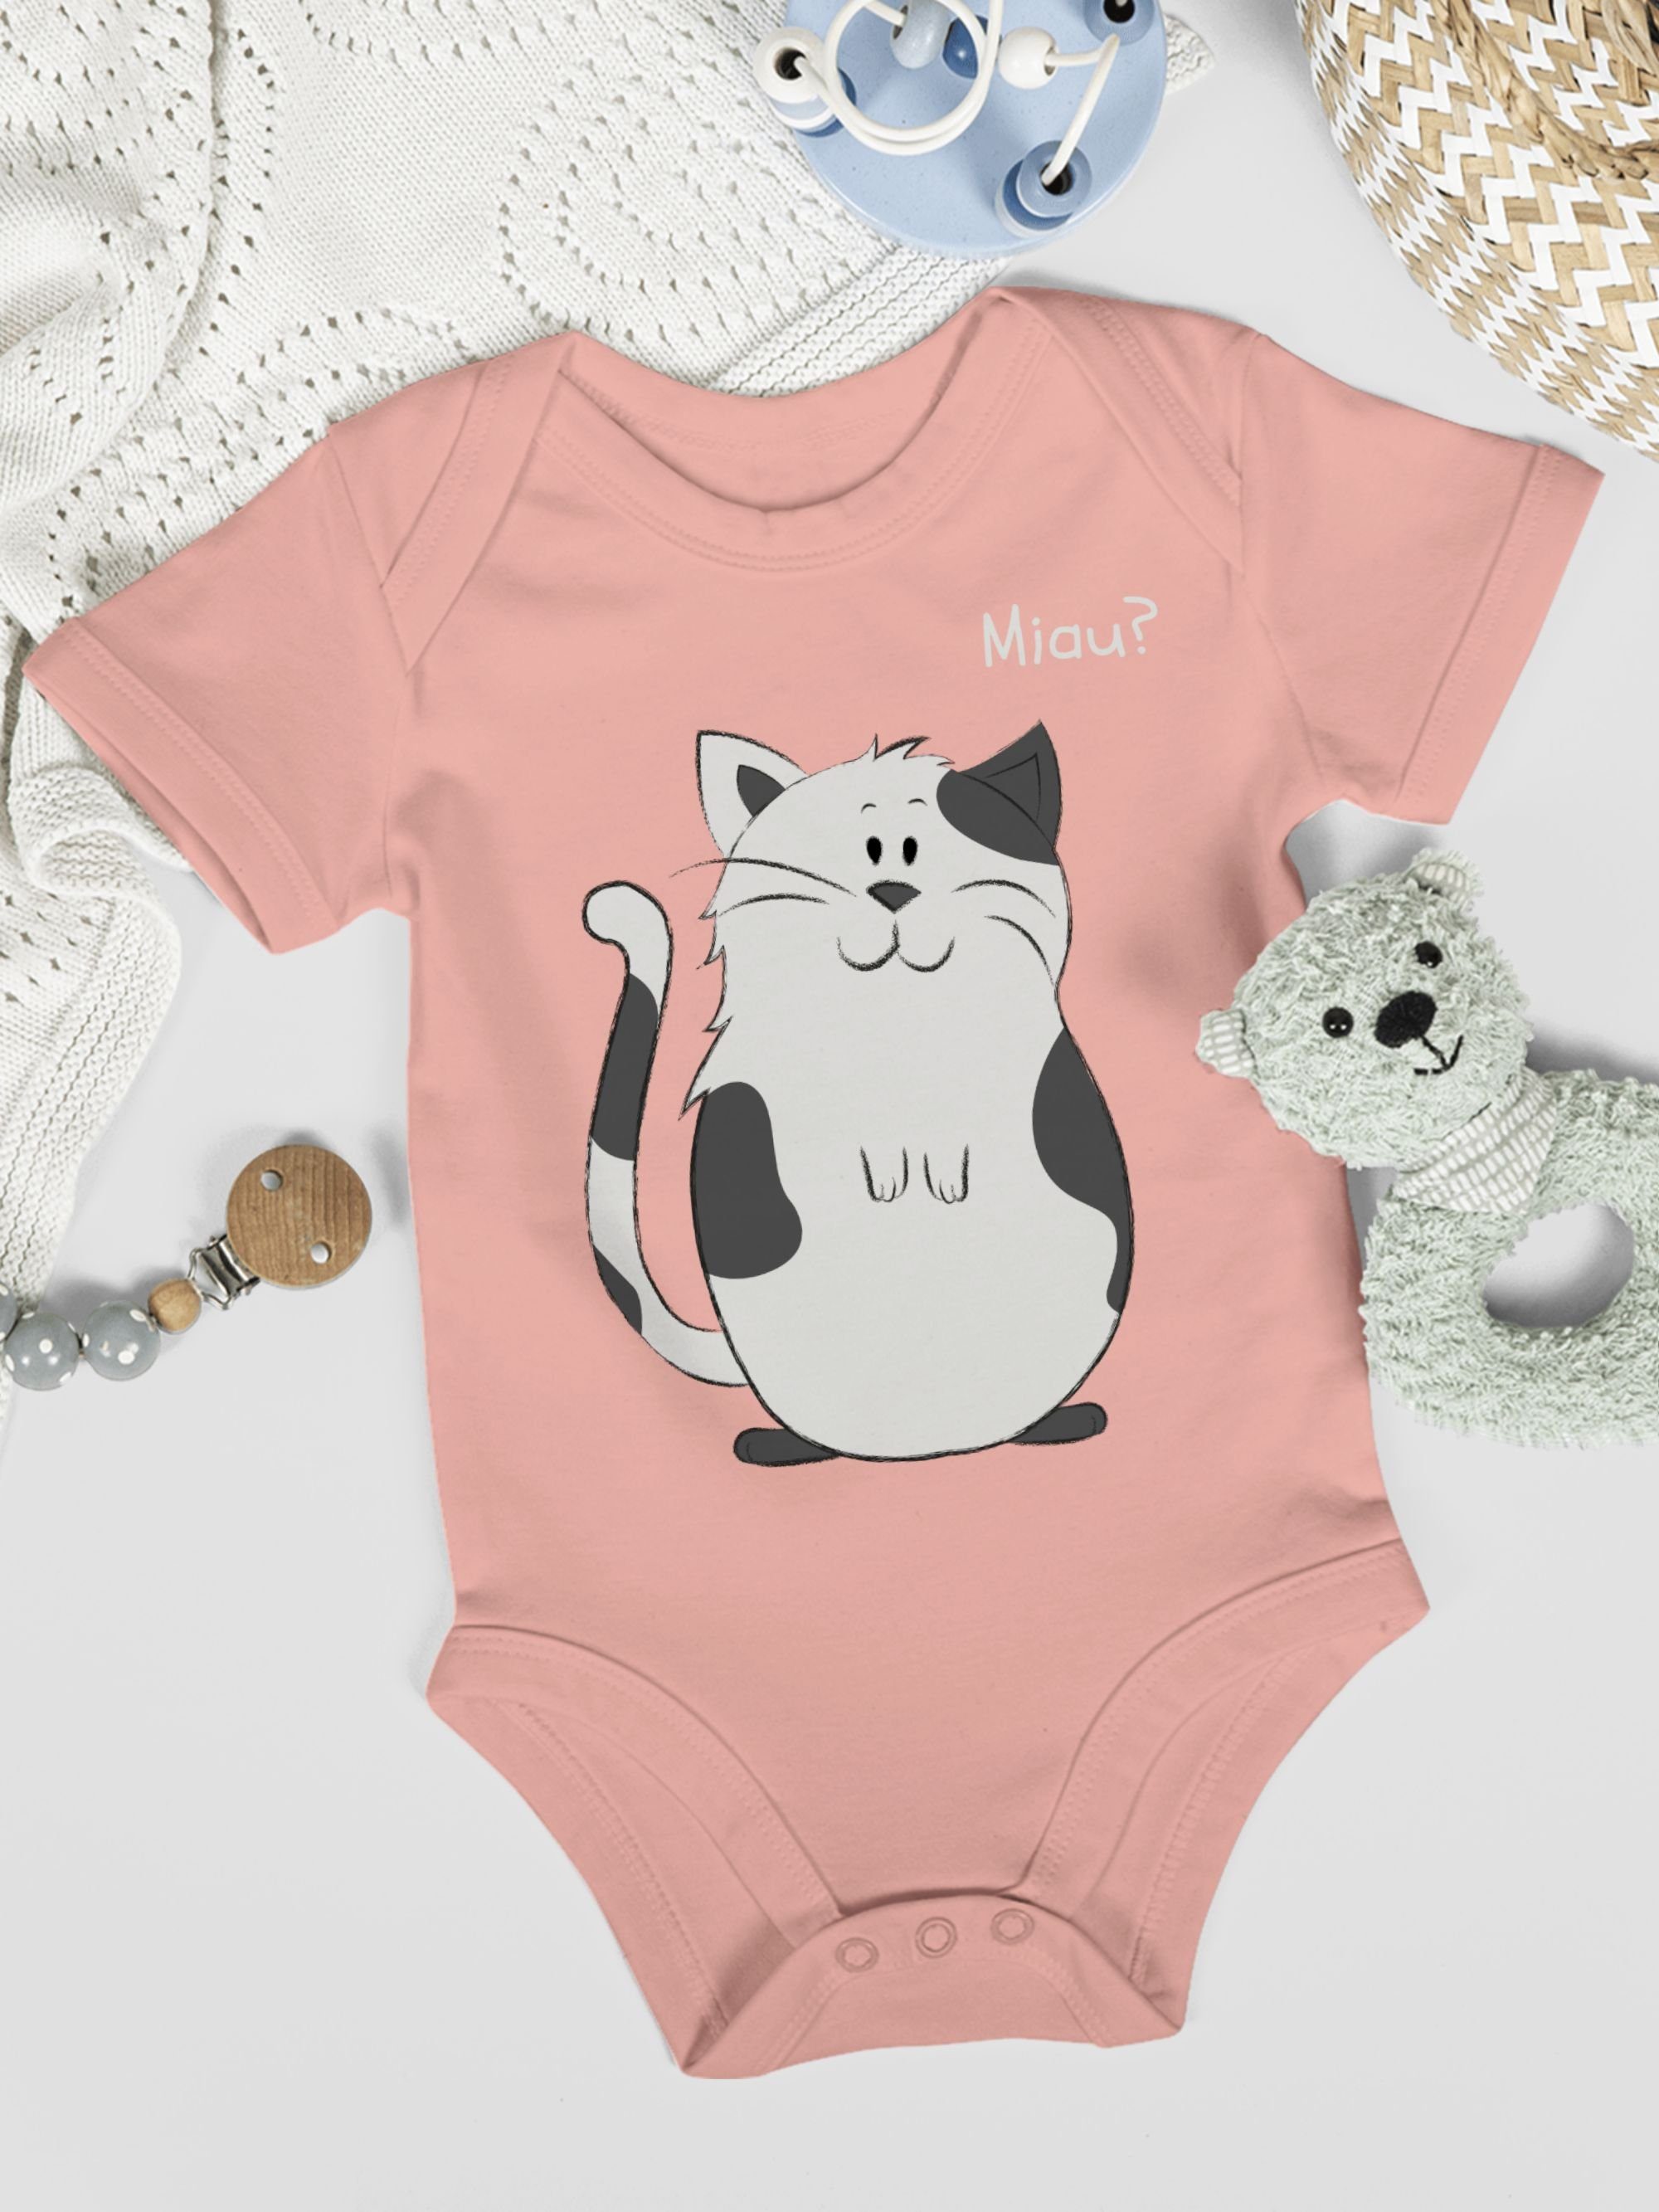 Shirtracer Shirtbody lustige Tiermotiv Katze Print 3 Baby Animal Babyrosa